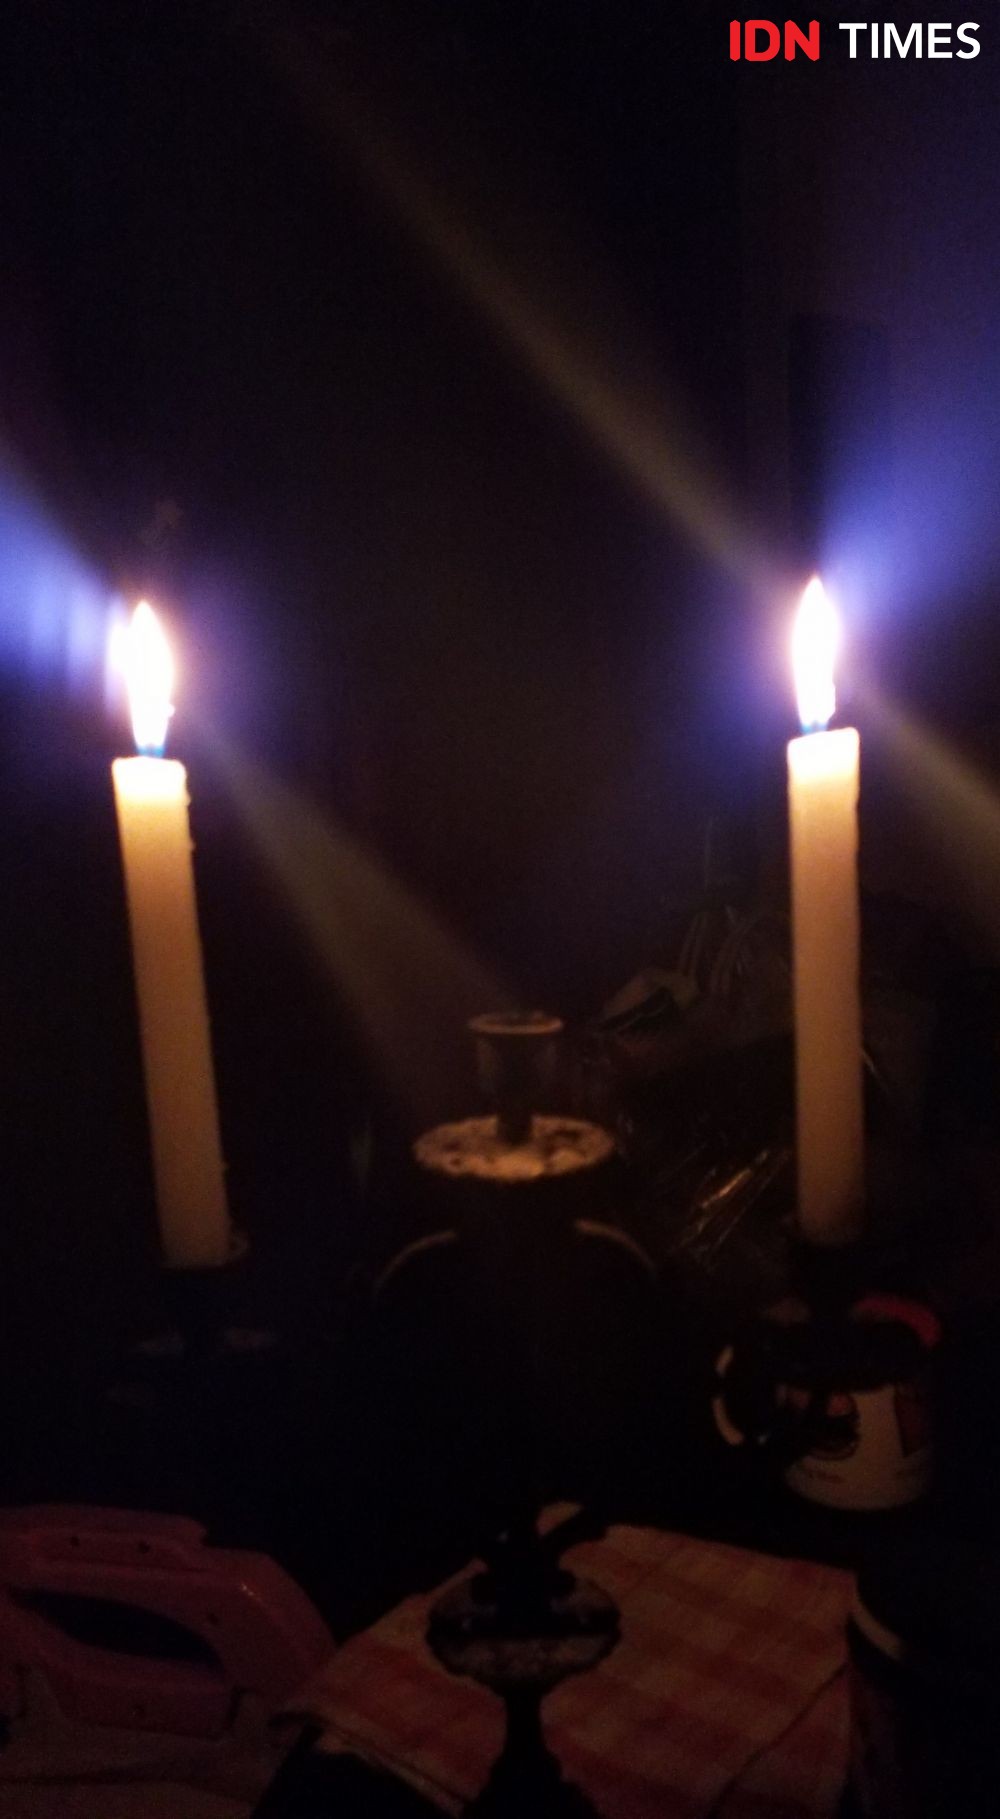 Gangguan di Jateng Sebabkan Blackout di Jabodetabek? Ini Penjelasannya